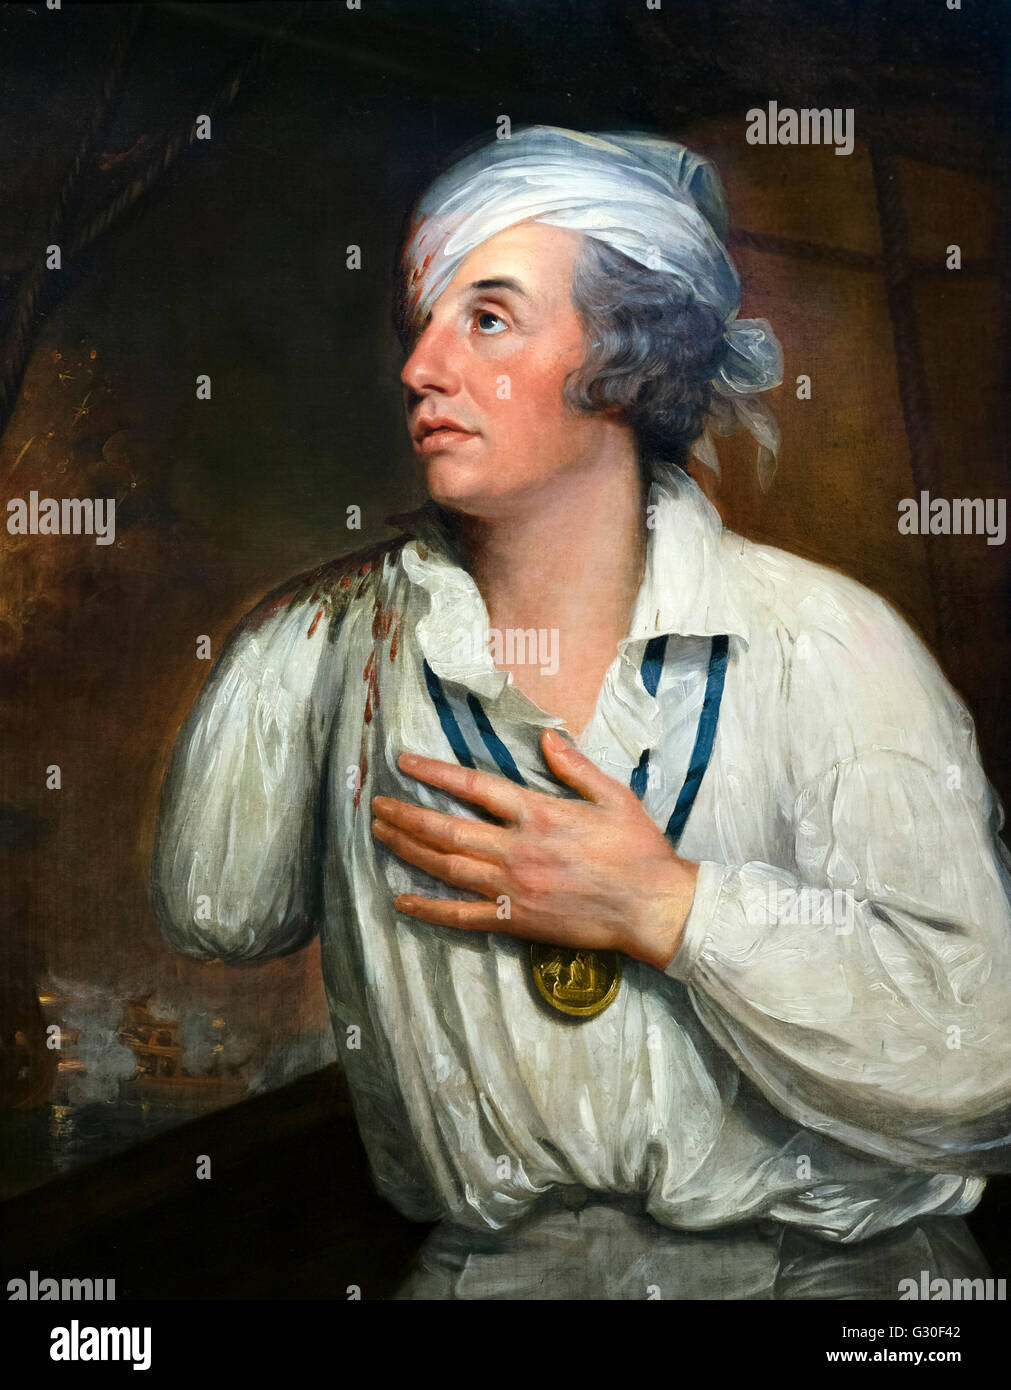 Lord Nelson. Ritratto di Contrammiraglio Sir Horatio Nelson, attribuita a Guy Testa, olio su tela, c.1800. Questo dipinto mostra Nelson dopo essere stato ferito in battaglia del Nilo nel 1798. Foto Stock